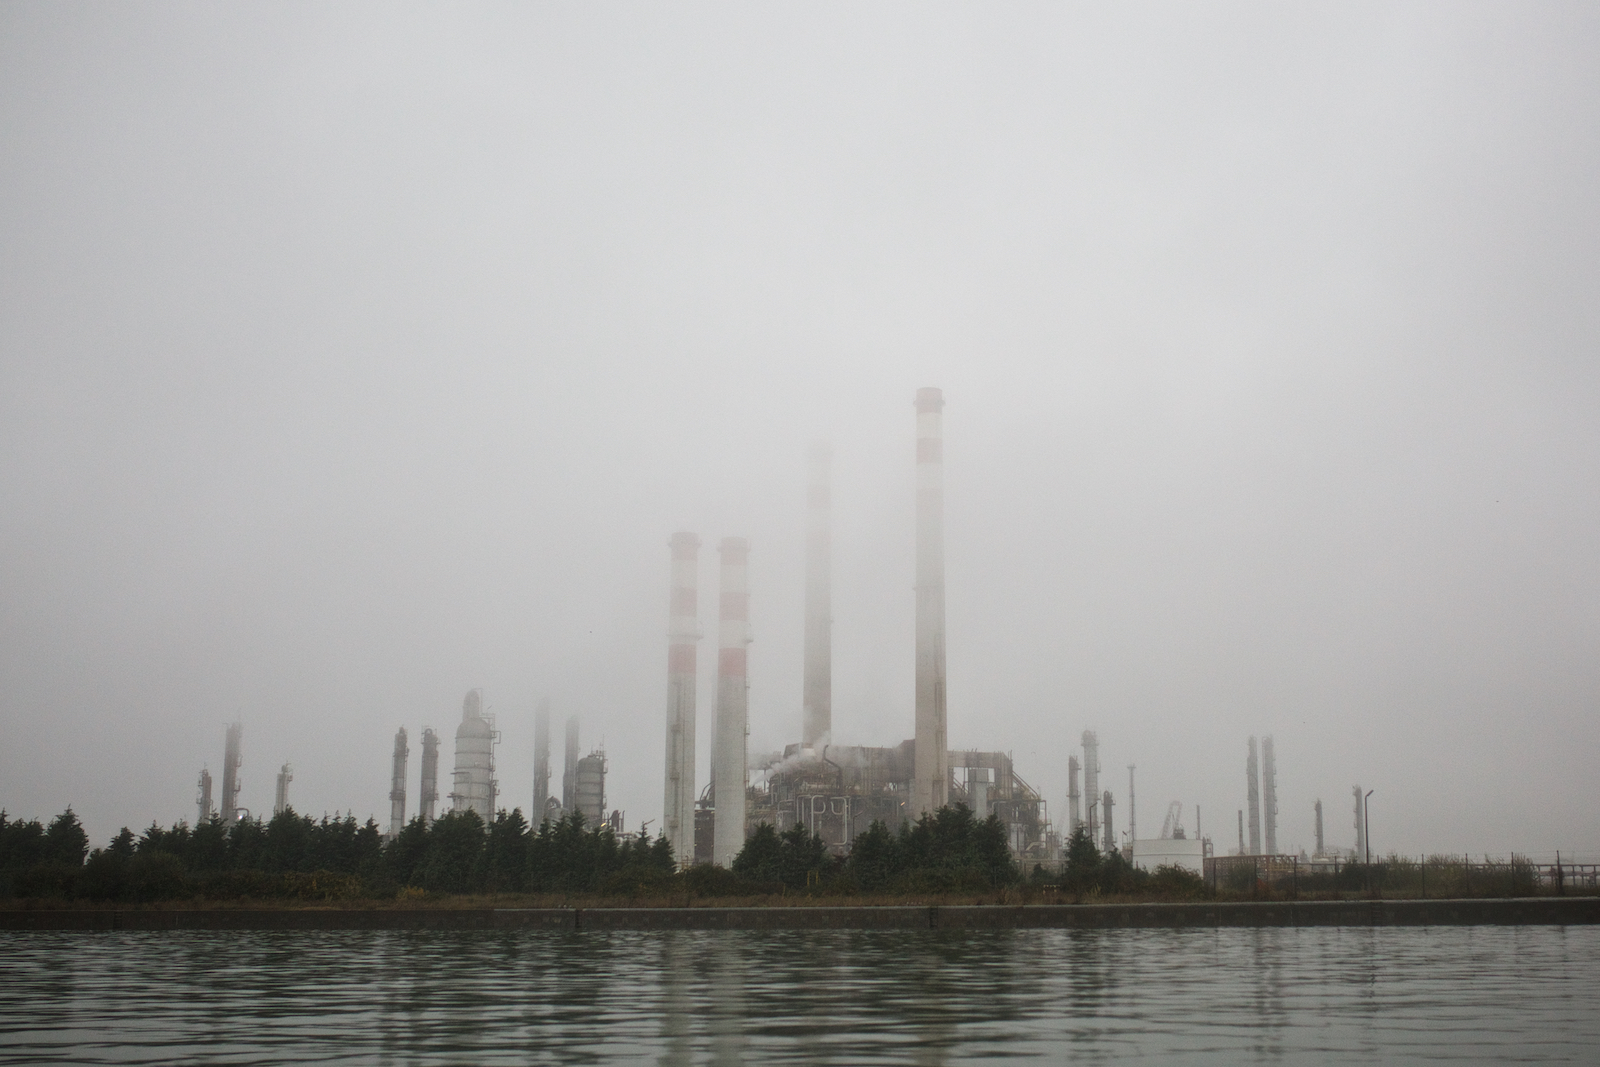  Vista di un impianto del polo industriale dal Canale Industriale Sud di Porto Marghera. Marghera, Novembre 2014 